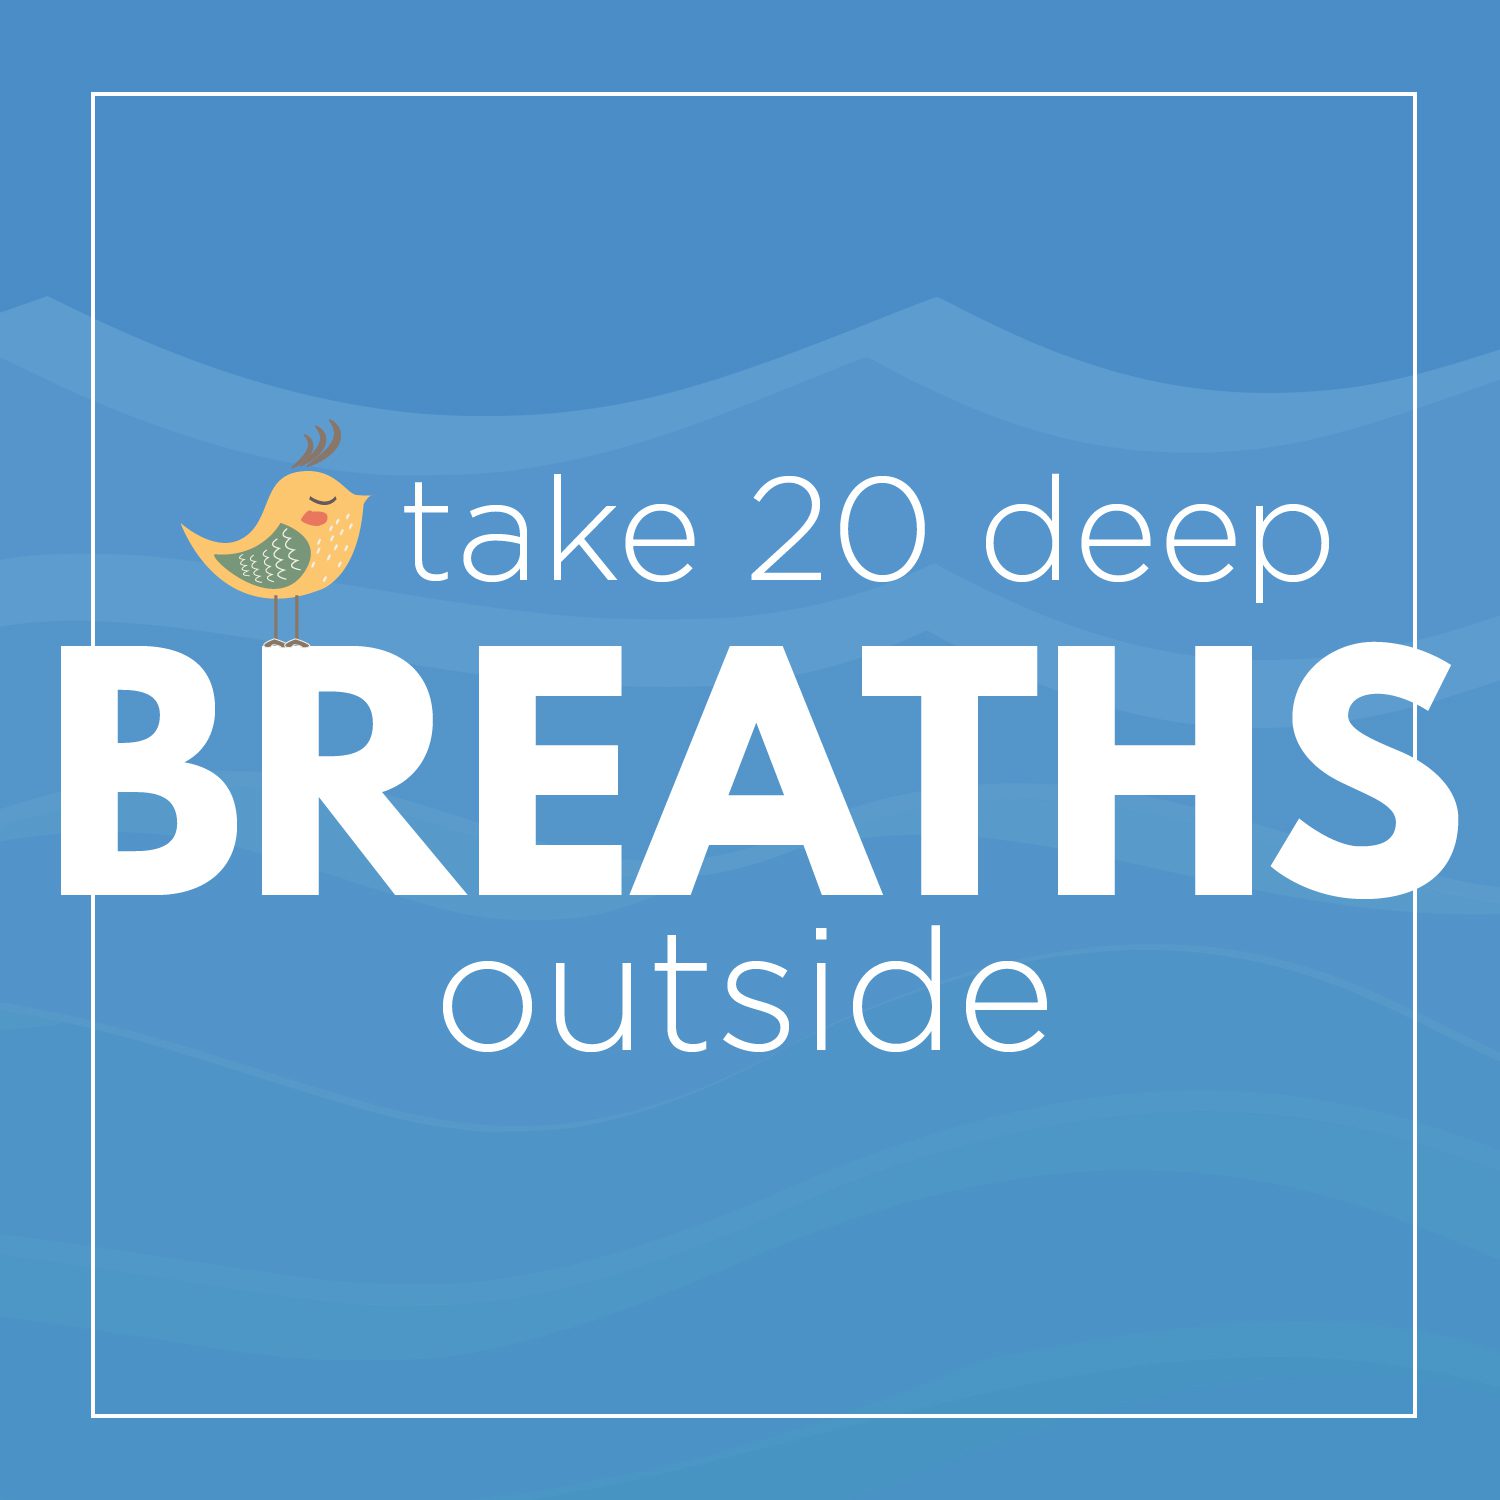 Take 20 deep breaths outside